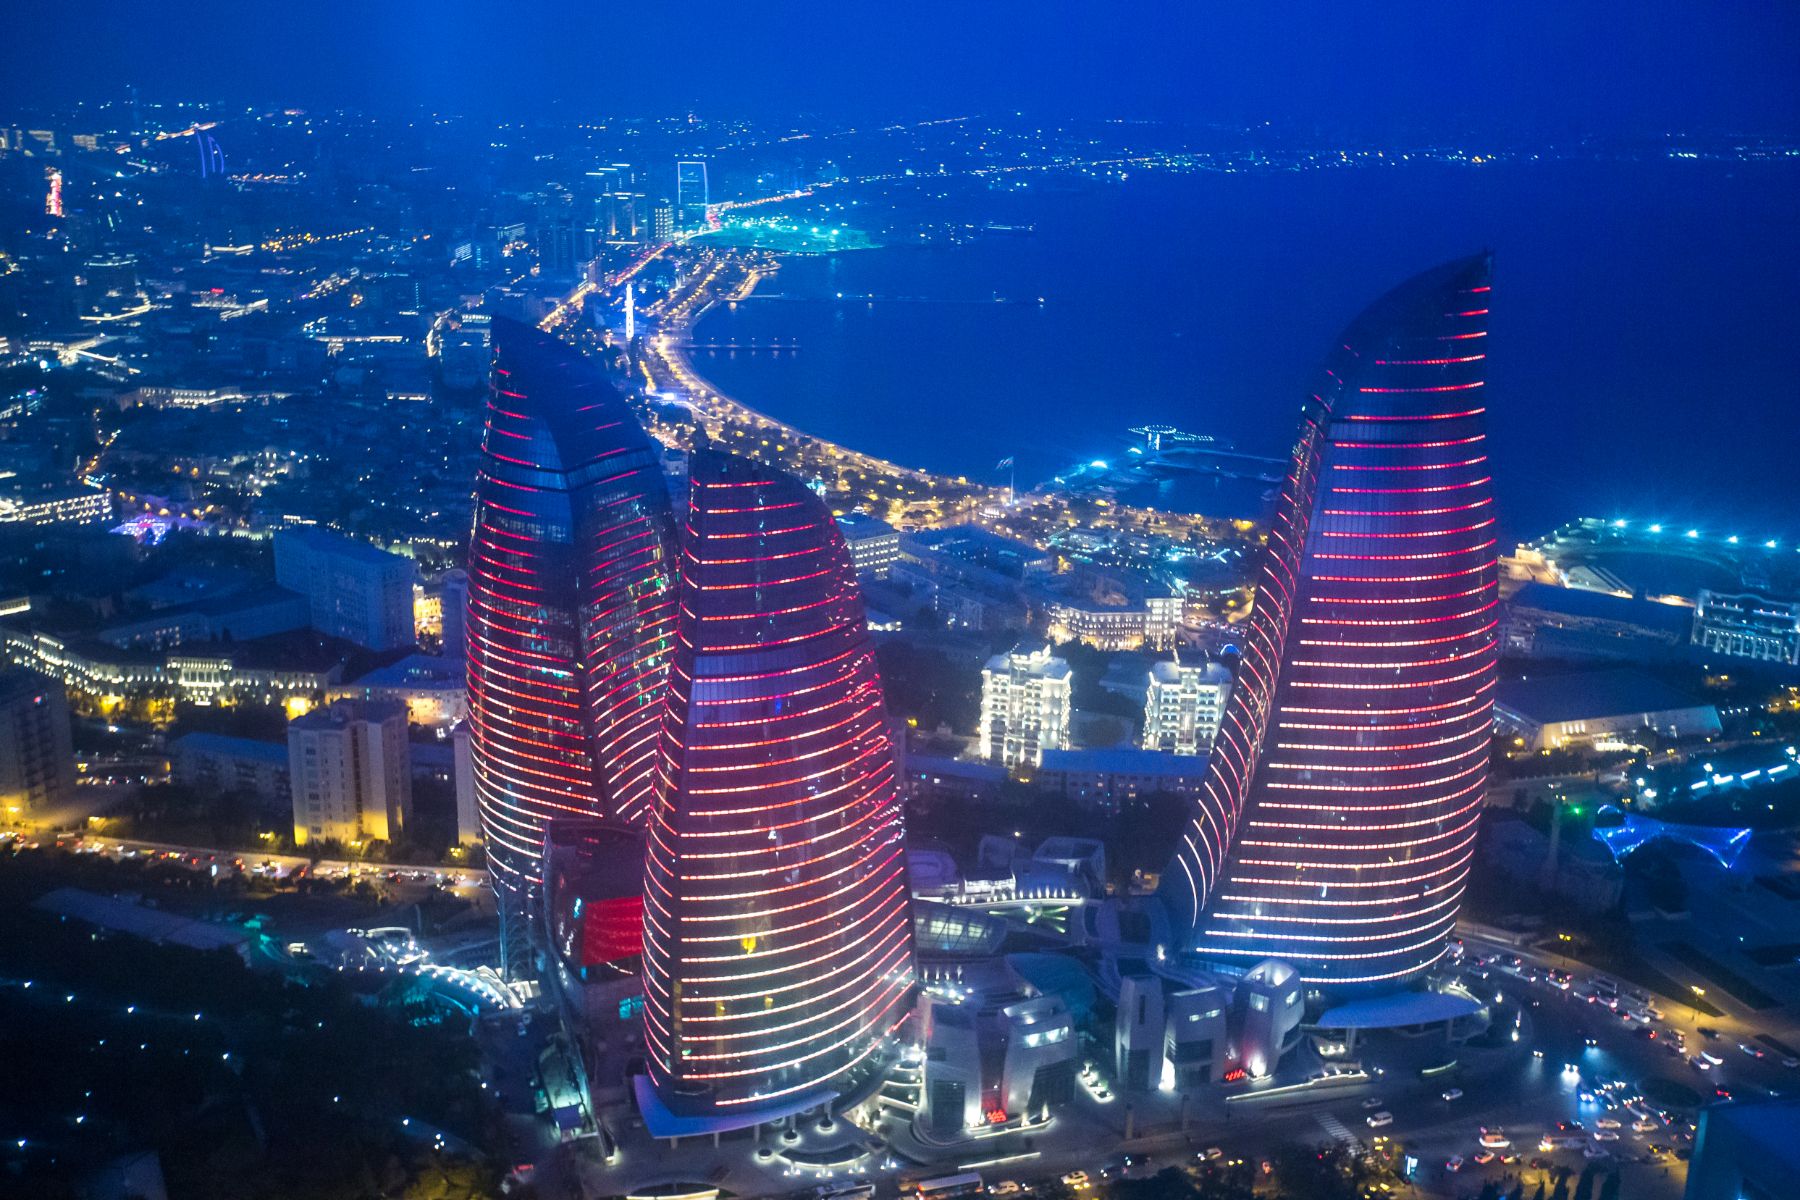 Fairmont Baku - Flame Towers